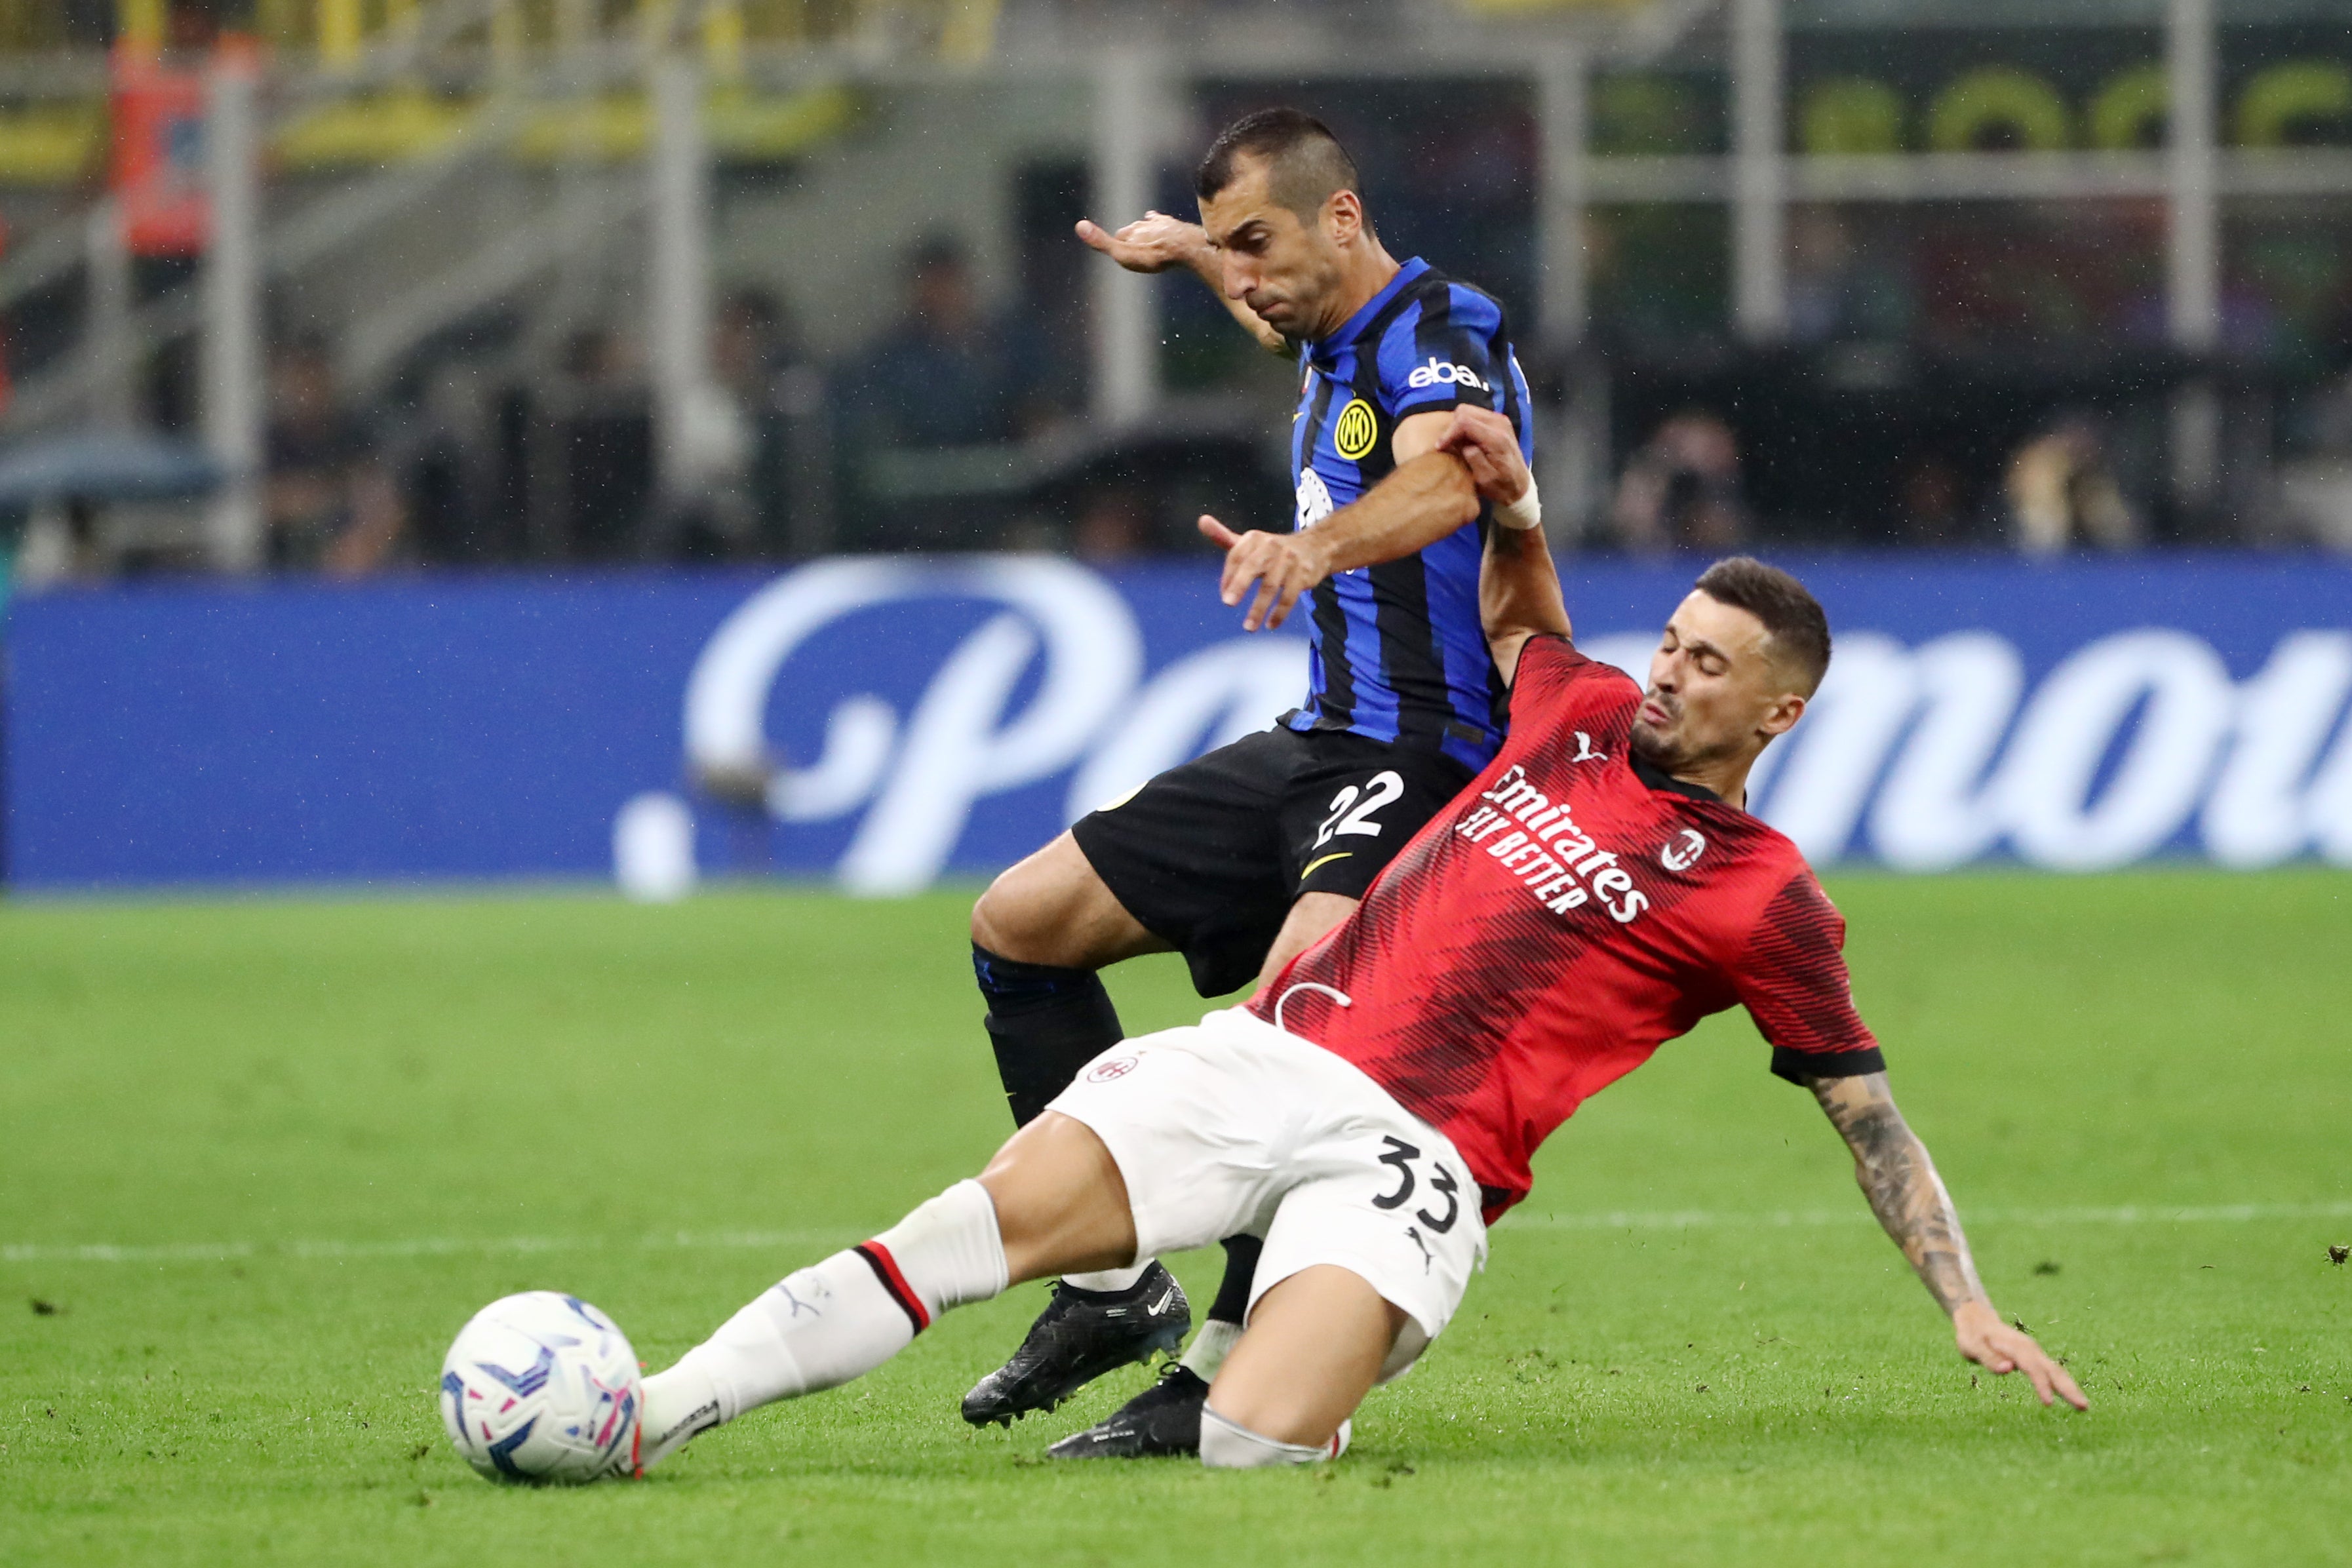 Inter Milan take on AC Milan seeking the Serie A title